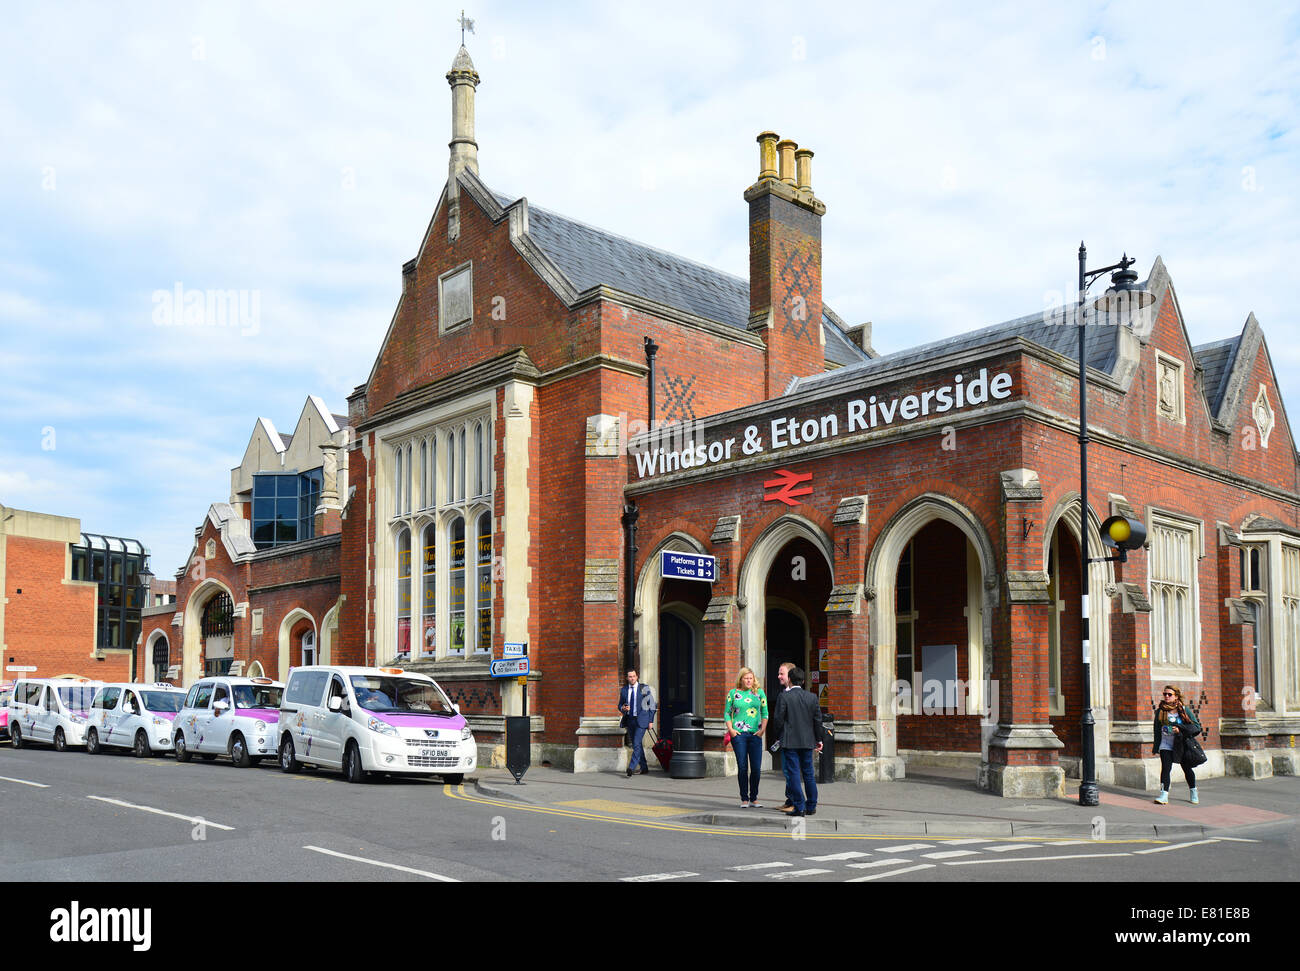 Windsor & Eton Riverside Gare, Datchet Road, Windsor, Berkshire, Angleterre, Royaume-Uni Banque D'Images